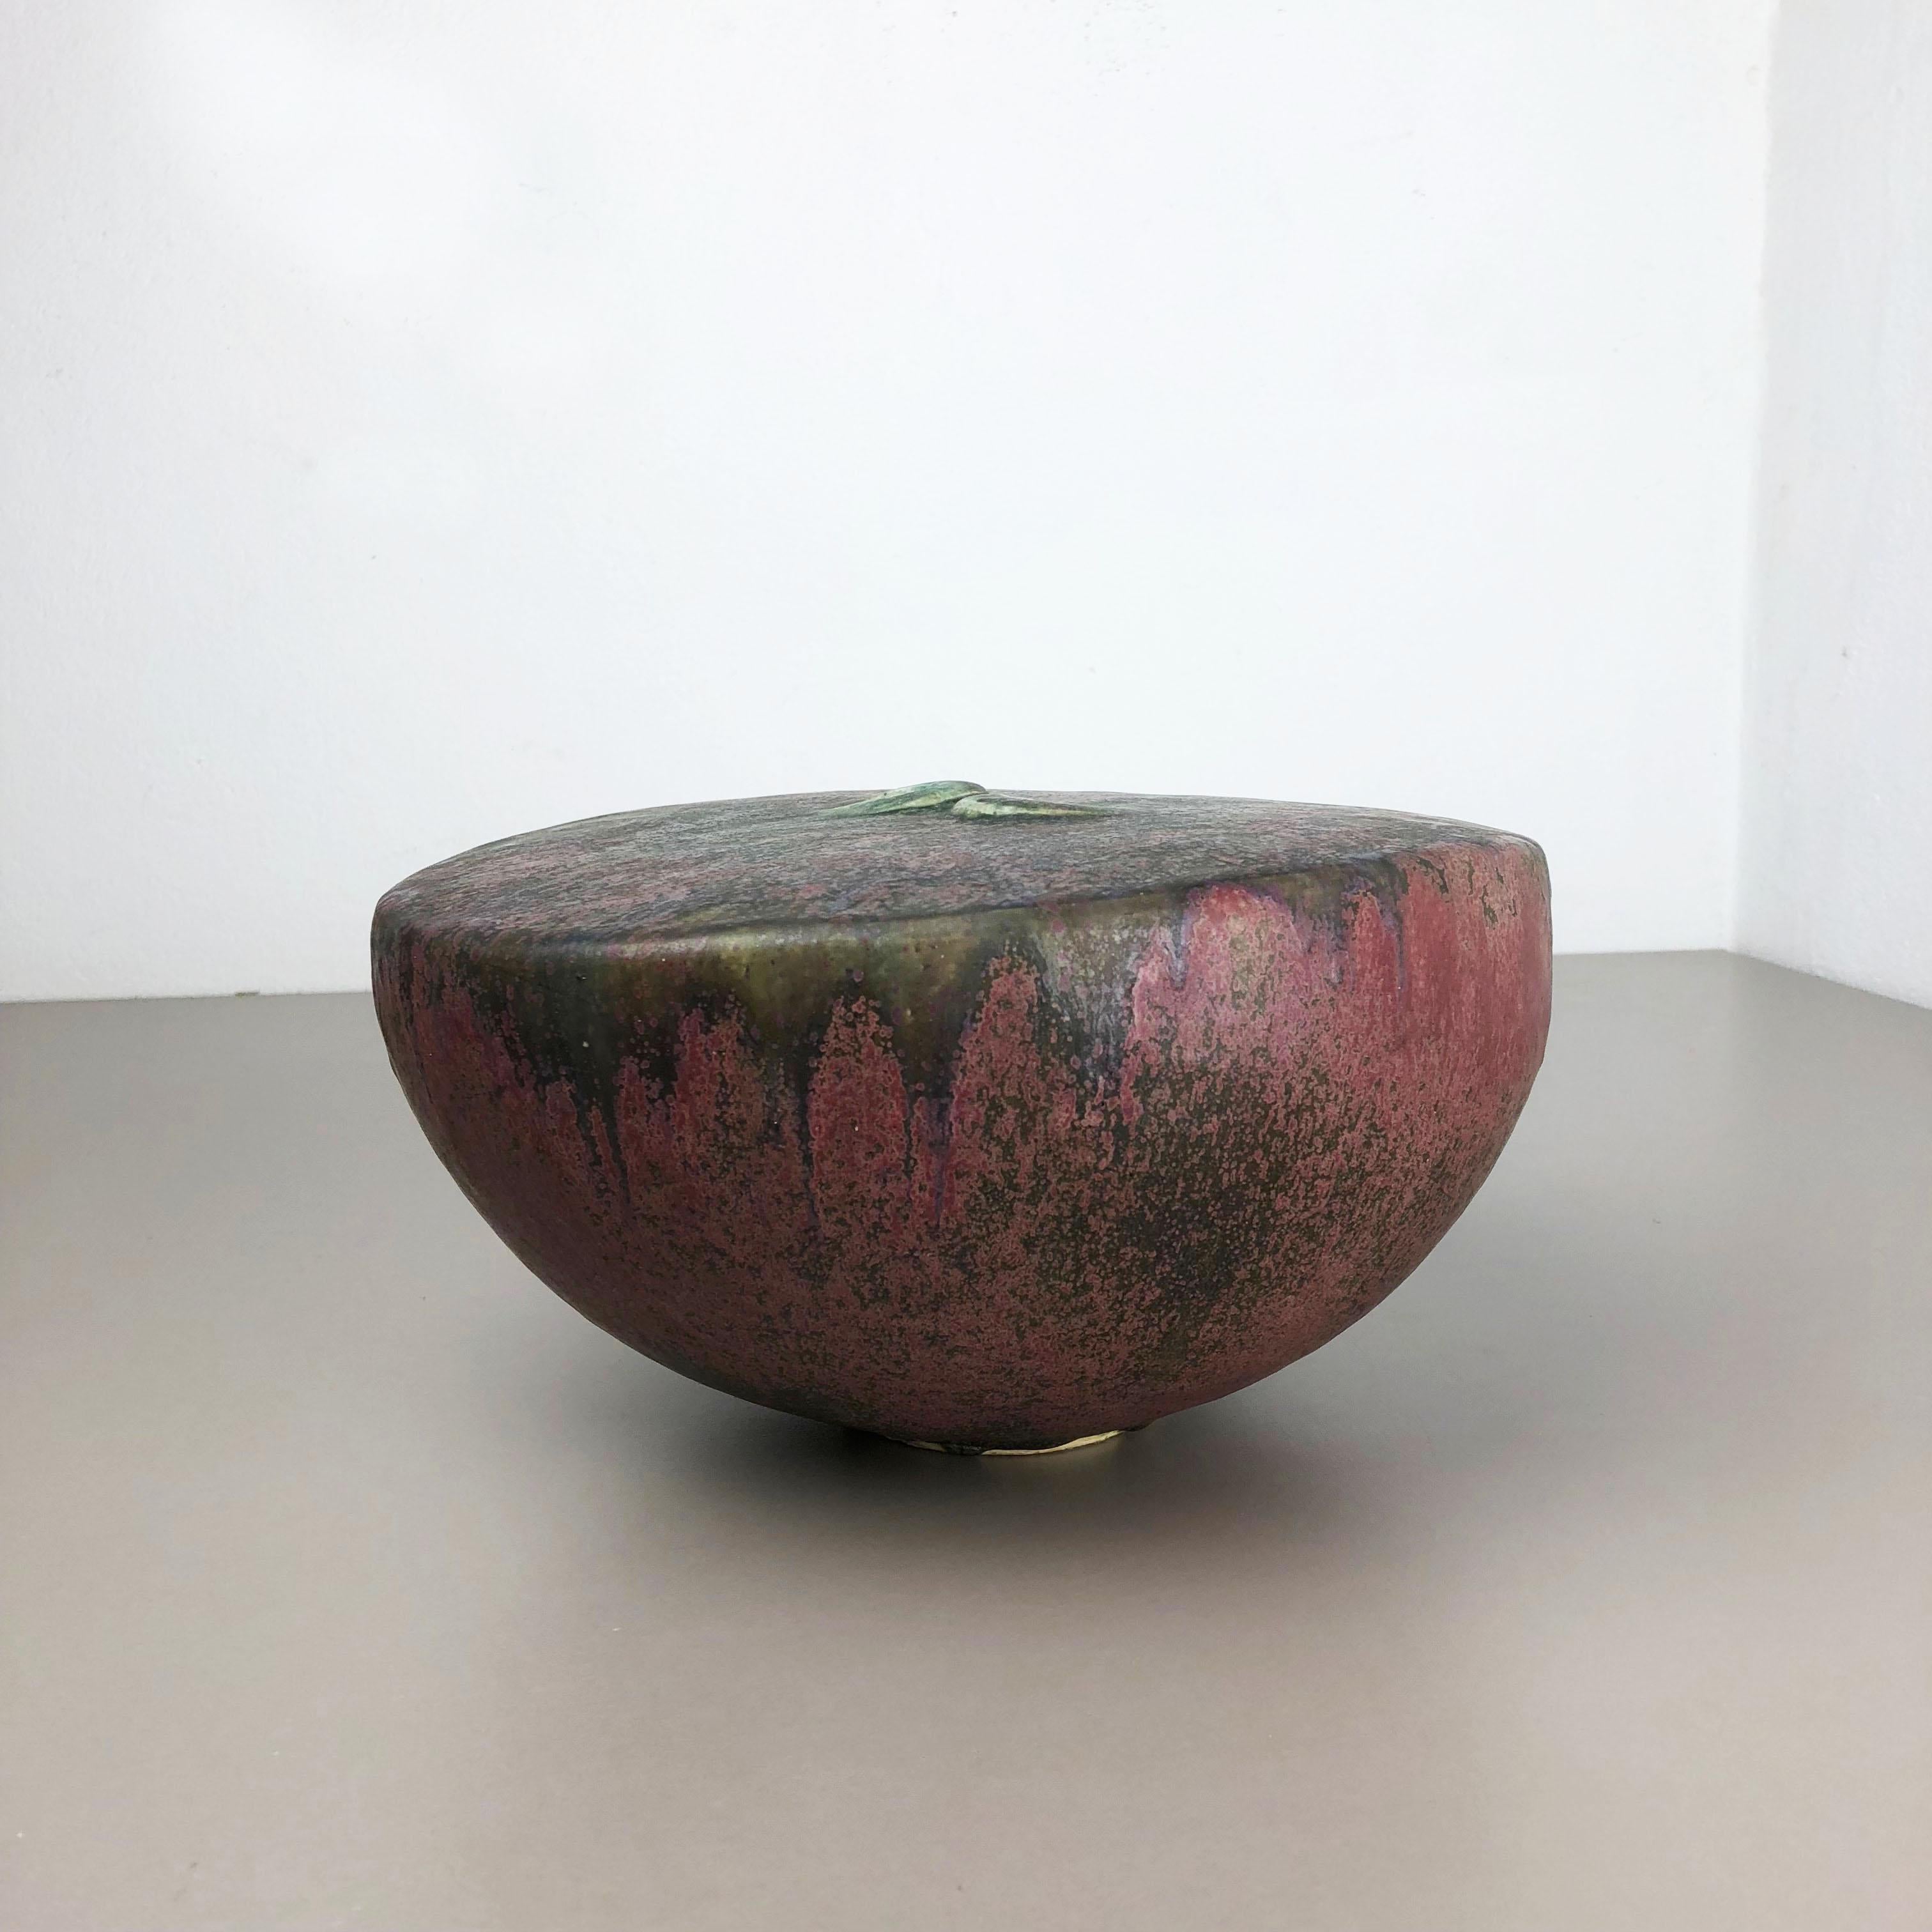 Große keramische Atelier Keramik Vase Objekt von Otto Meier Bremen Deutschland 1960s (Moderne der Mitte des Jahrhunderts)